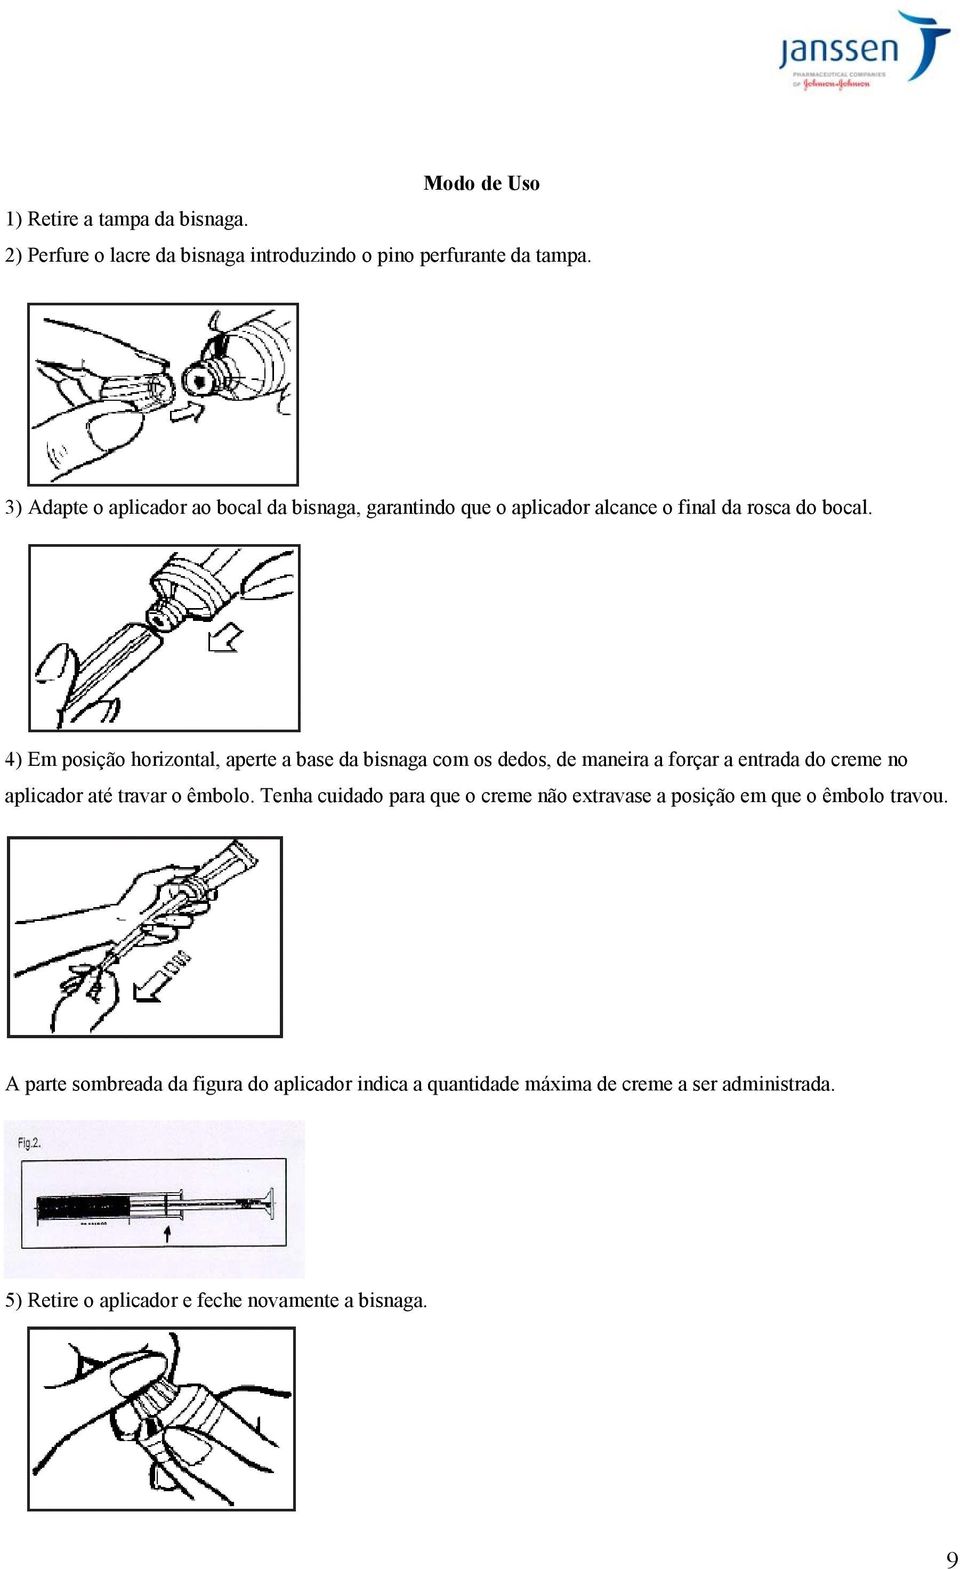 4) Em posição horizontal, aperte a base da bisnaga com os dedos, de maneira a forçar a entrada do creme no aplicador até travar o êmbolo.